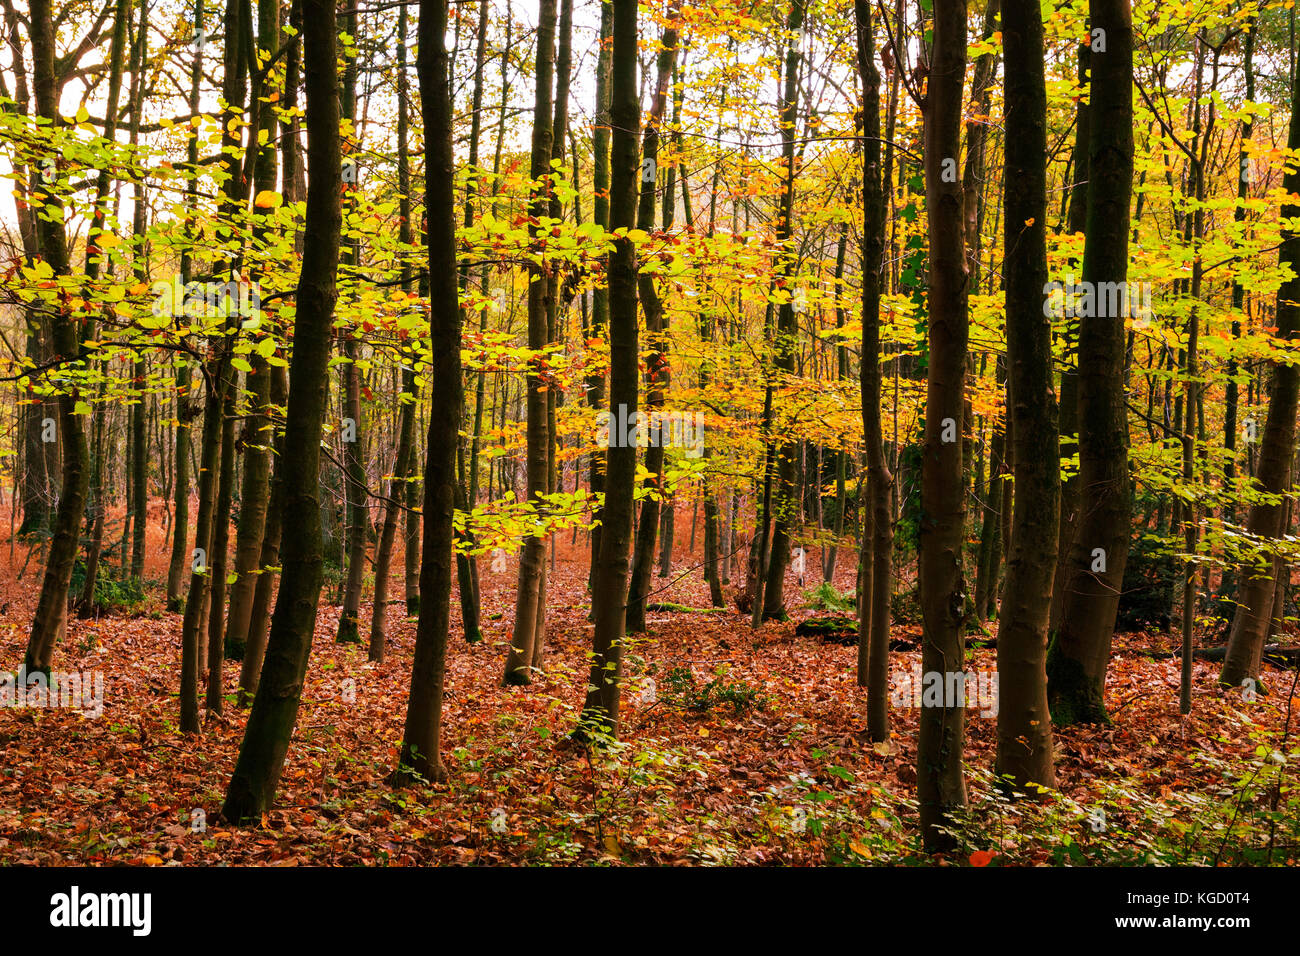 Uhlenhorst forest, aka Broich-Speldorfer Wald, in autumn, Mülheim an der Ruhr, Ruhr Area, North Rhine-Westphalia, Germany Stock Photo